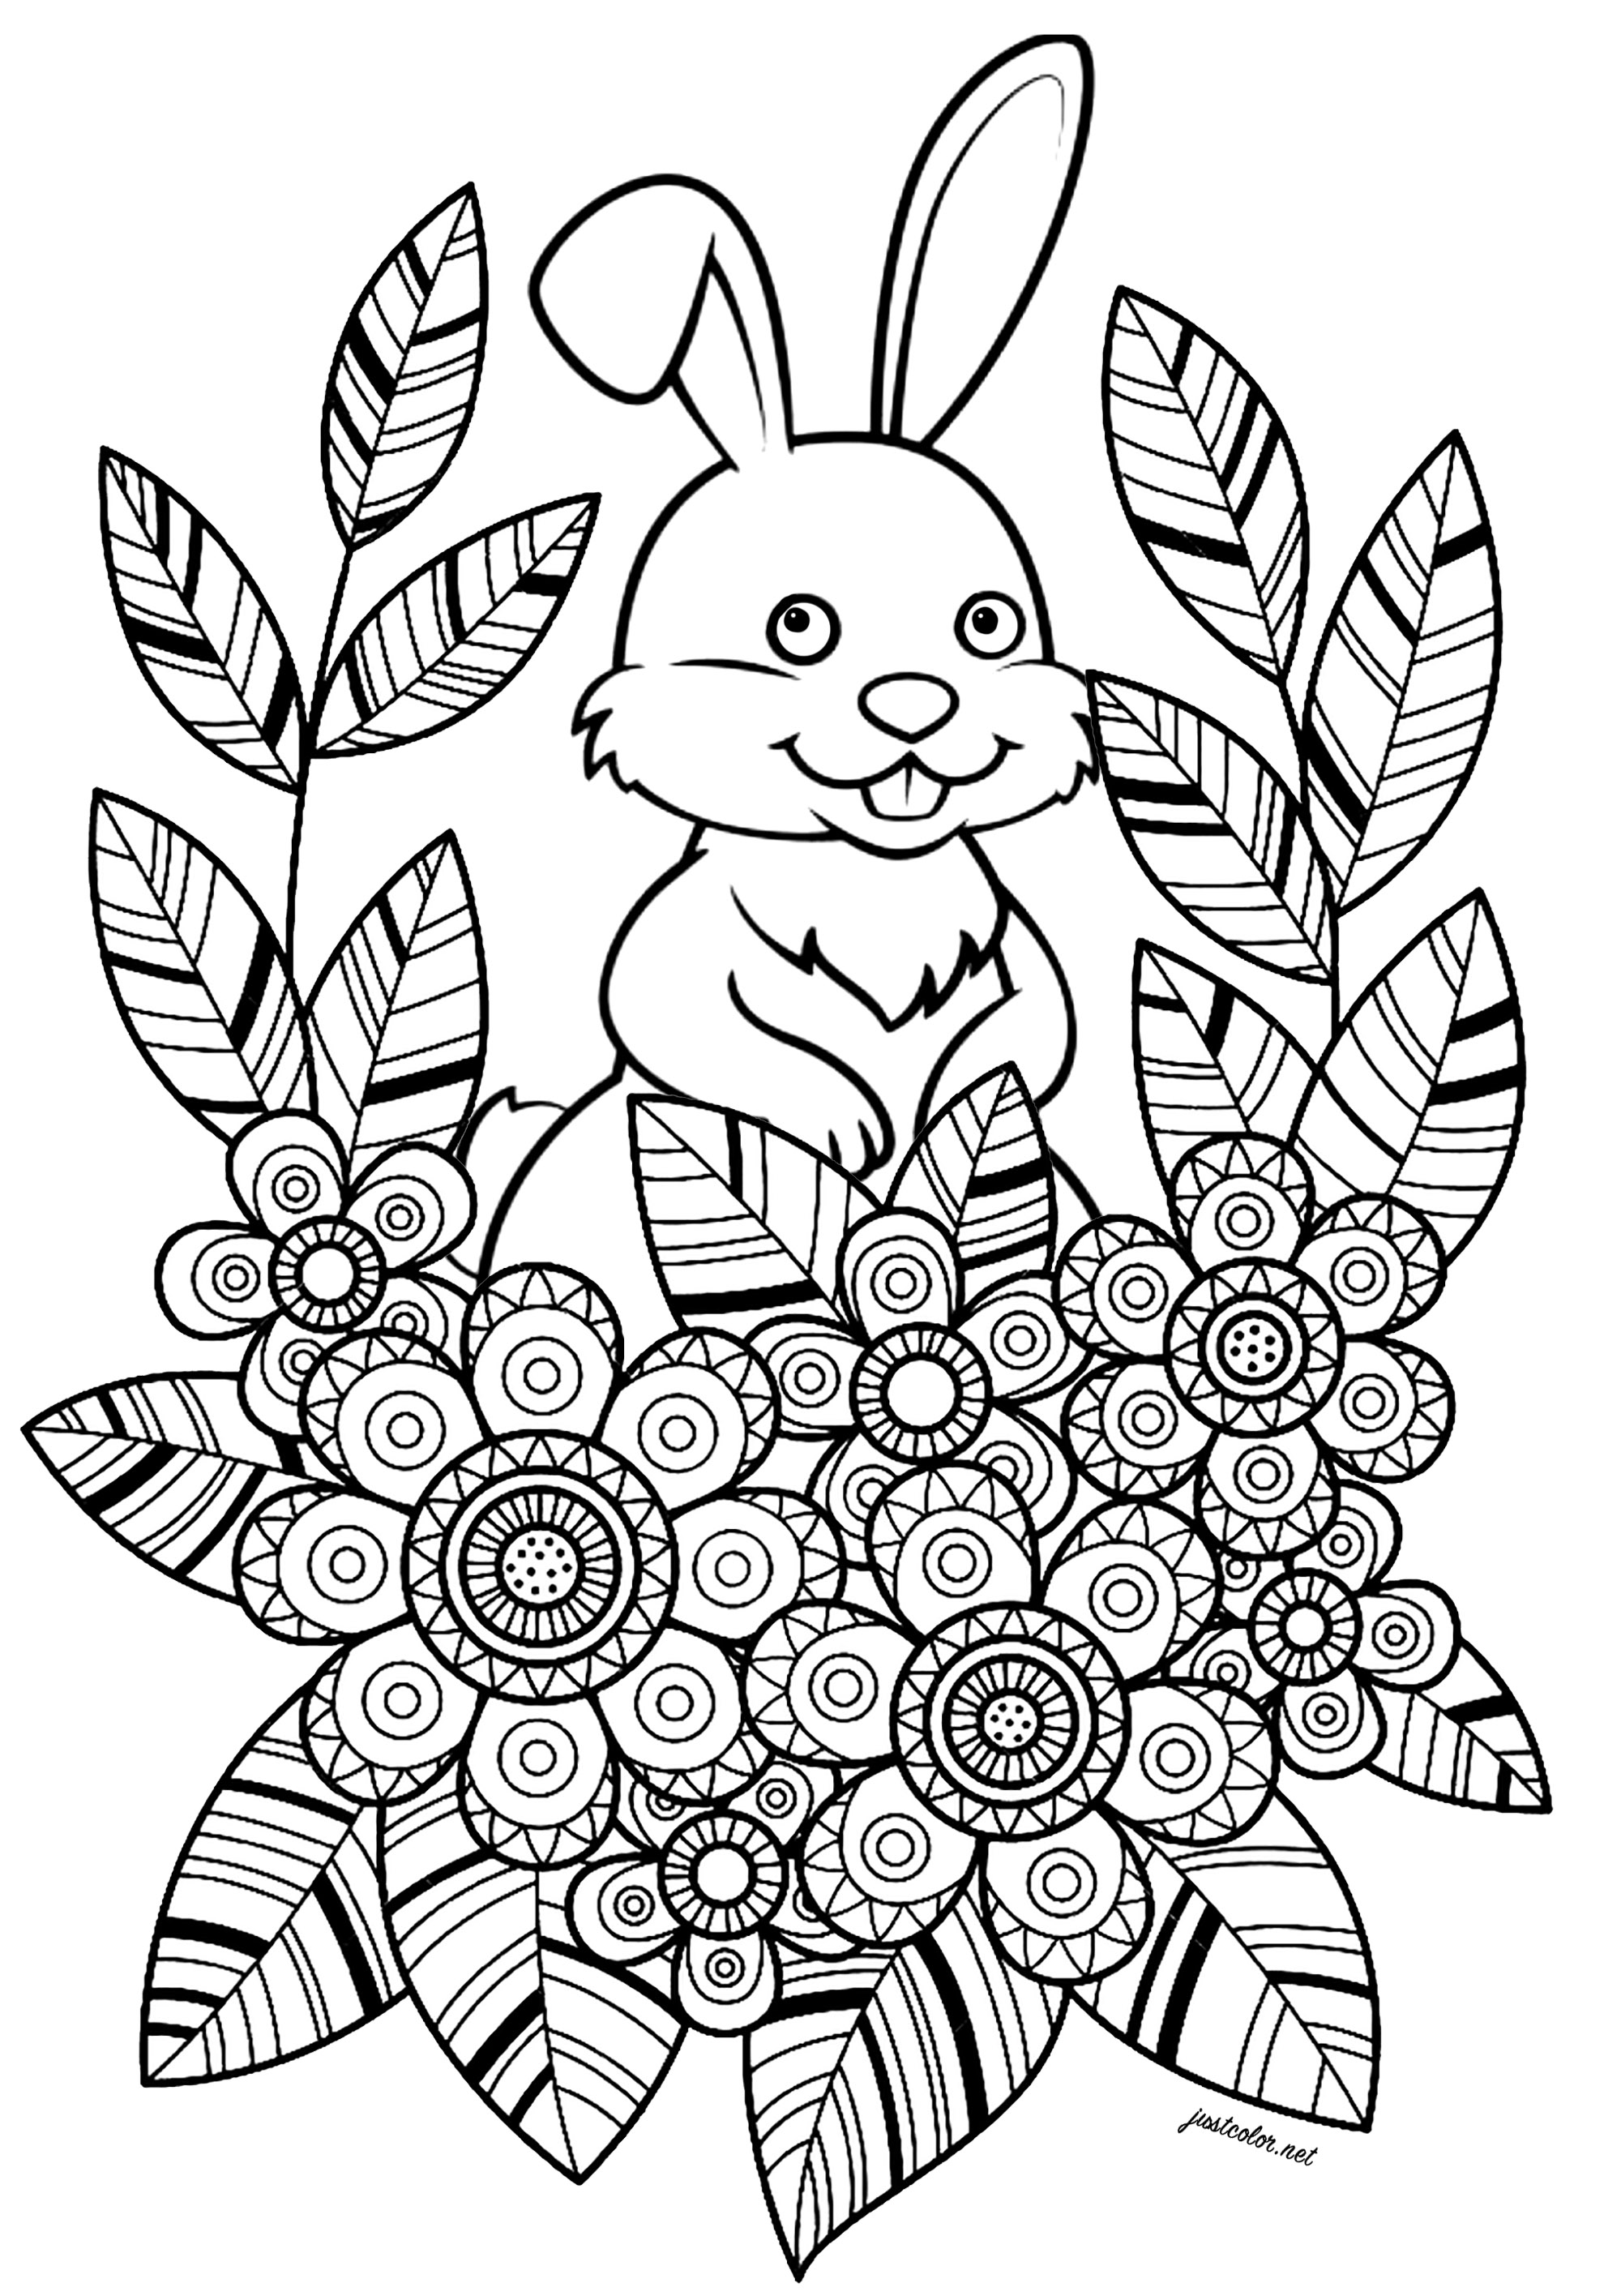 Conejo con flores y hojas en un bonito diseño. Esta sencilla y encantadora página para colorear presenta a un conejo blanco que se esconde detrás de flores y hojas. Las flores y las hojas están dibujadas con un estilo muy agradable para colorear, con zonas bien definidas y bonitos dibujos.